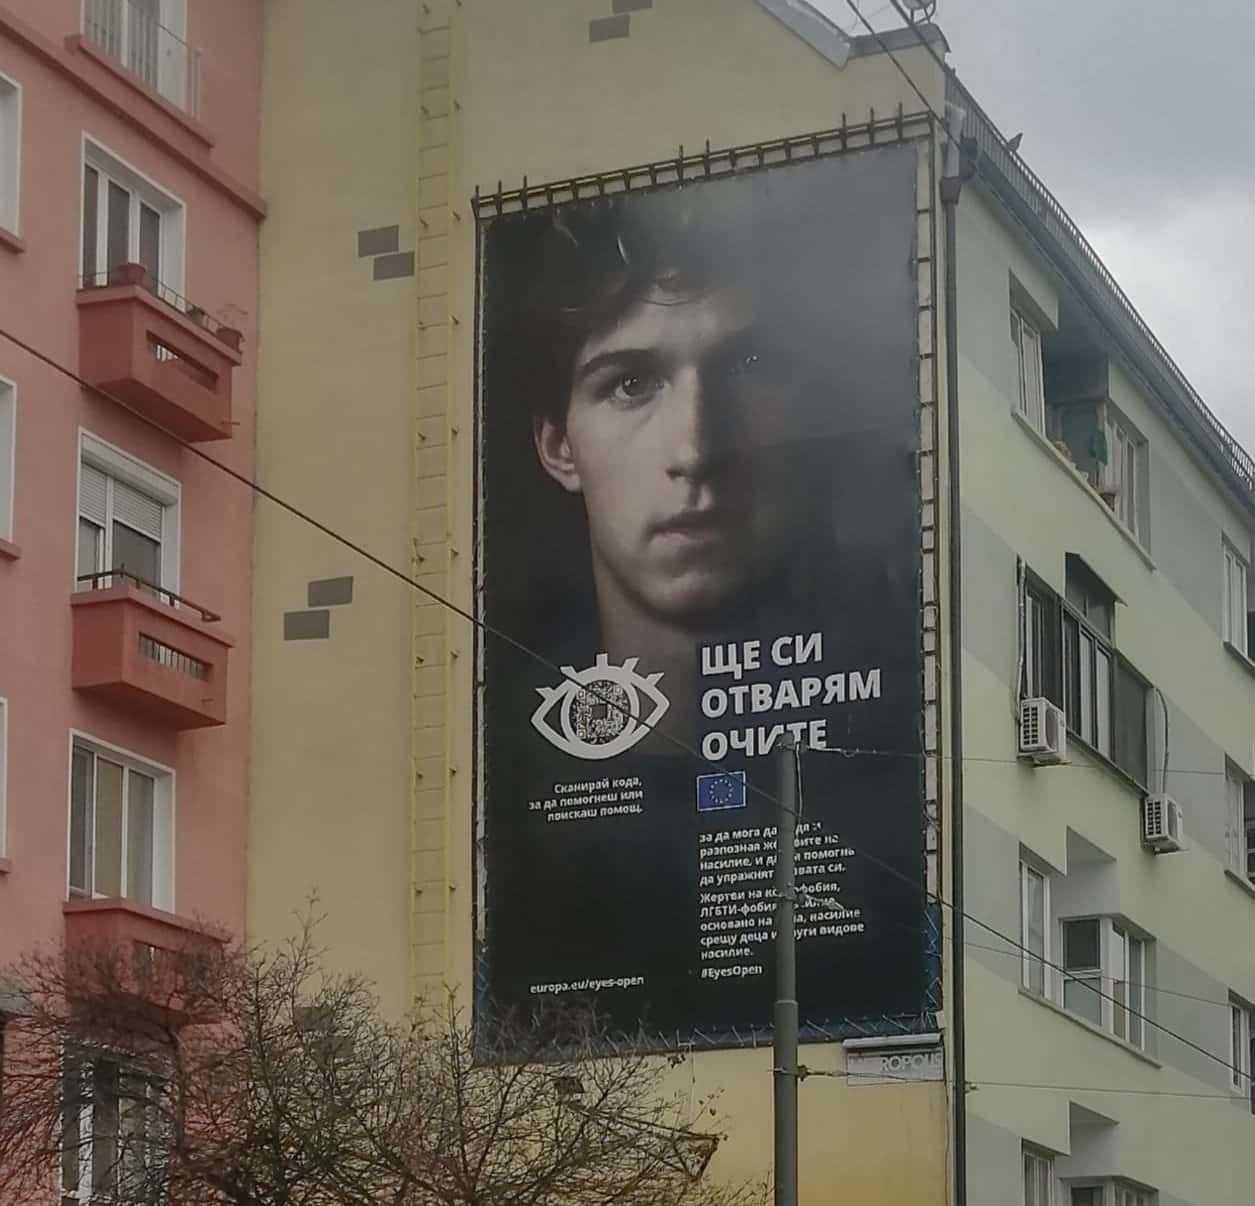 Потребител на социалната мрежа Facebook публикува снимка на огромен билборд